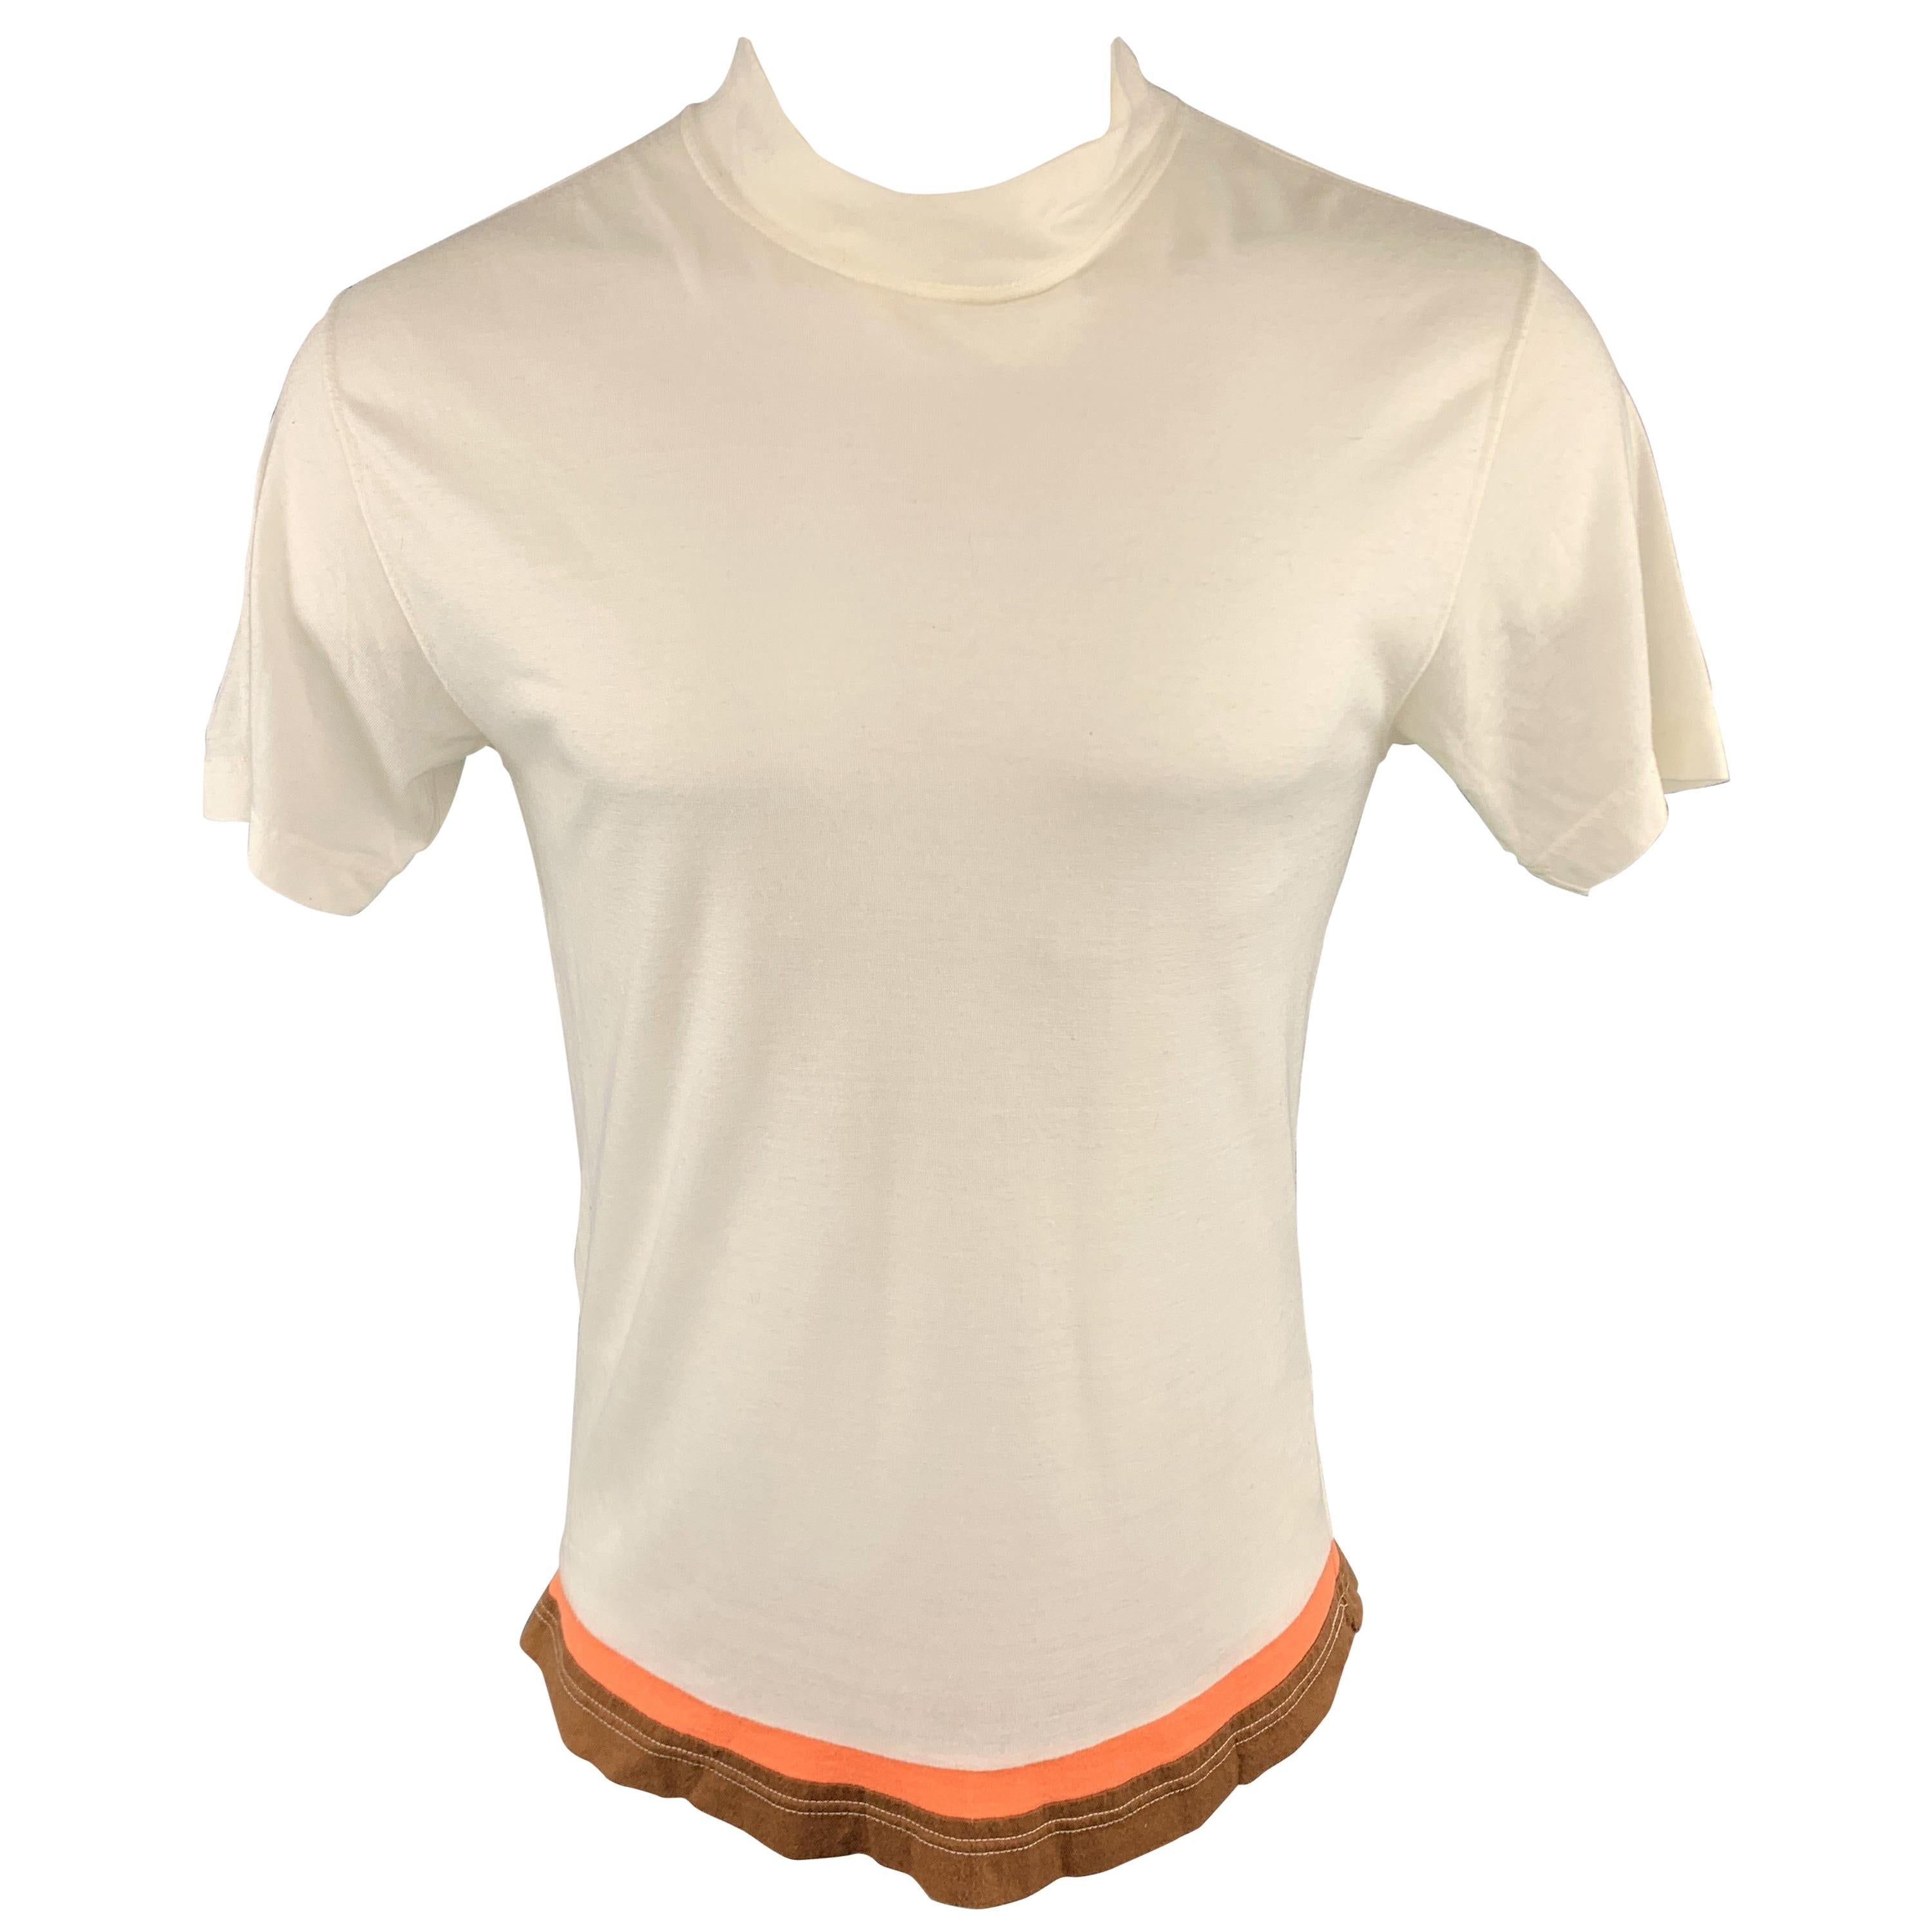 COMME des GARCONS HOMME PLUS Size M White Acrylic Mock Neck T-shirt